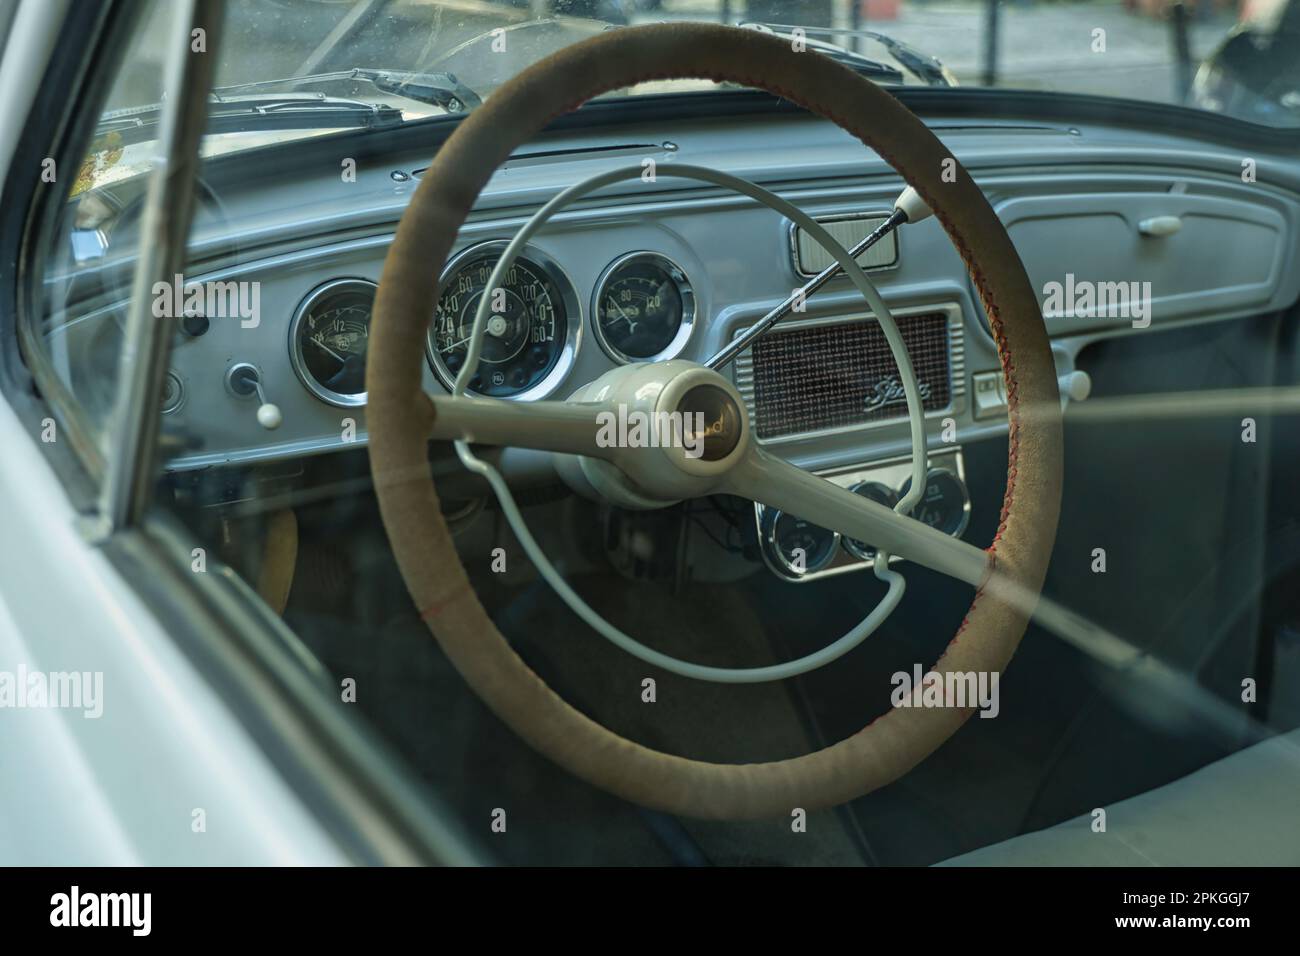 ancienne minuterie vue cockpit skoda octavia année 1963 Banque D'Images